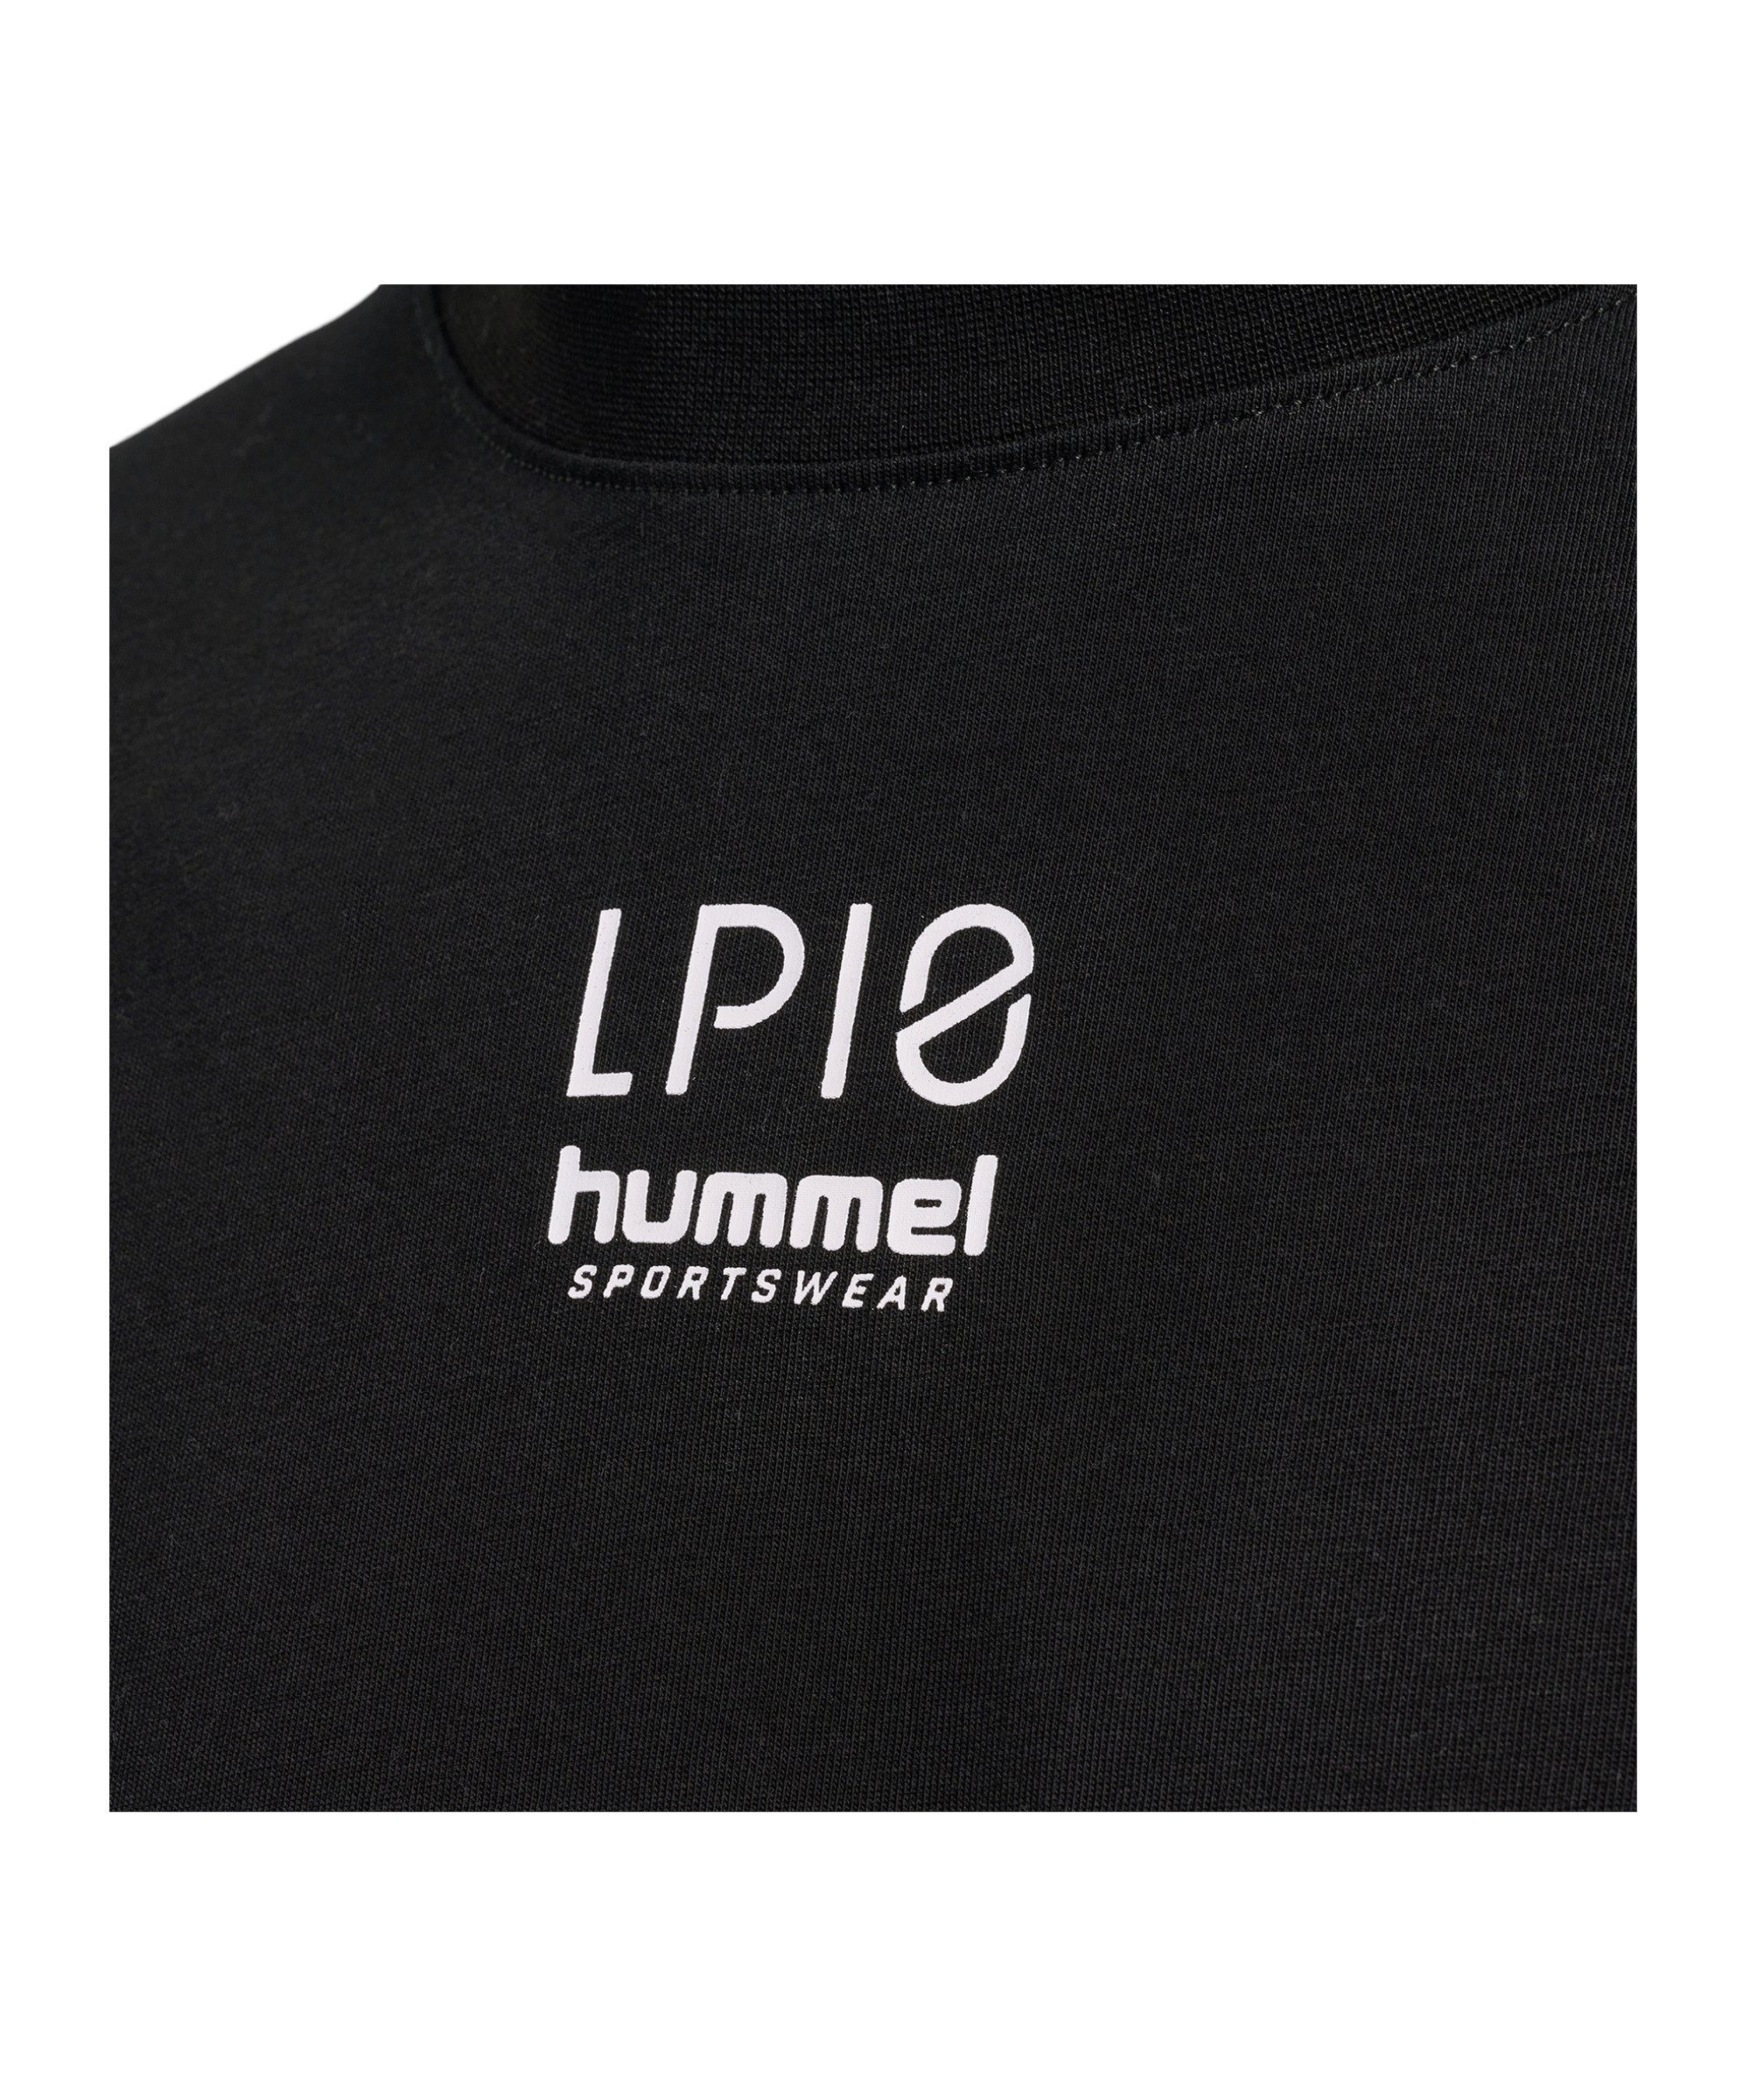 schwarz default Boxy hummel T-Shirt T-Shirt hmlLP10